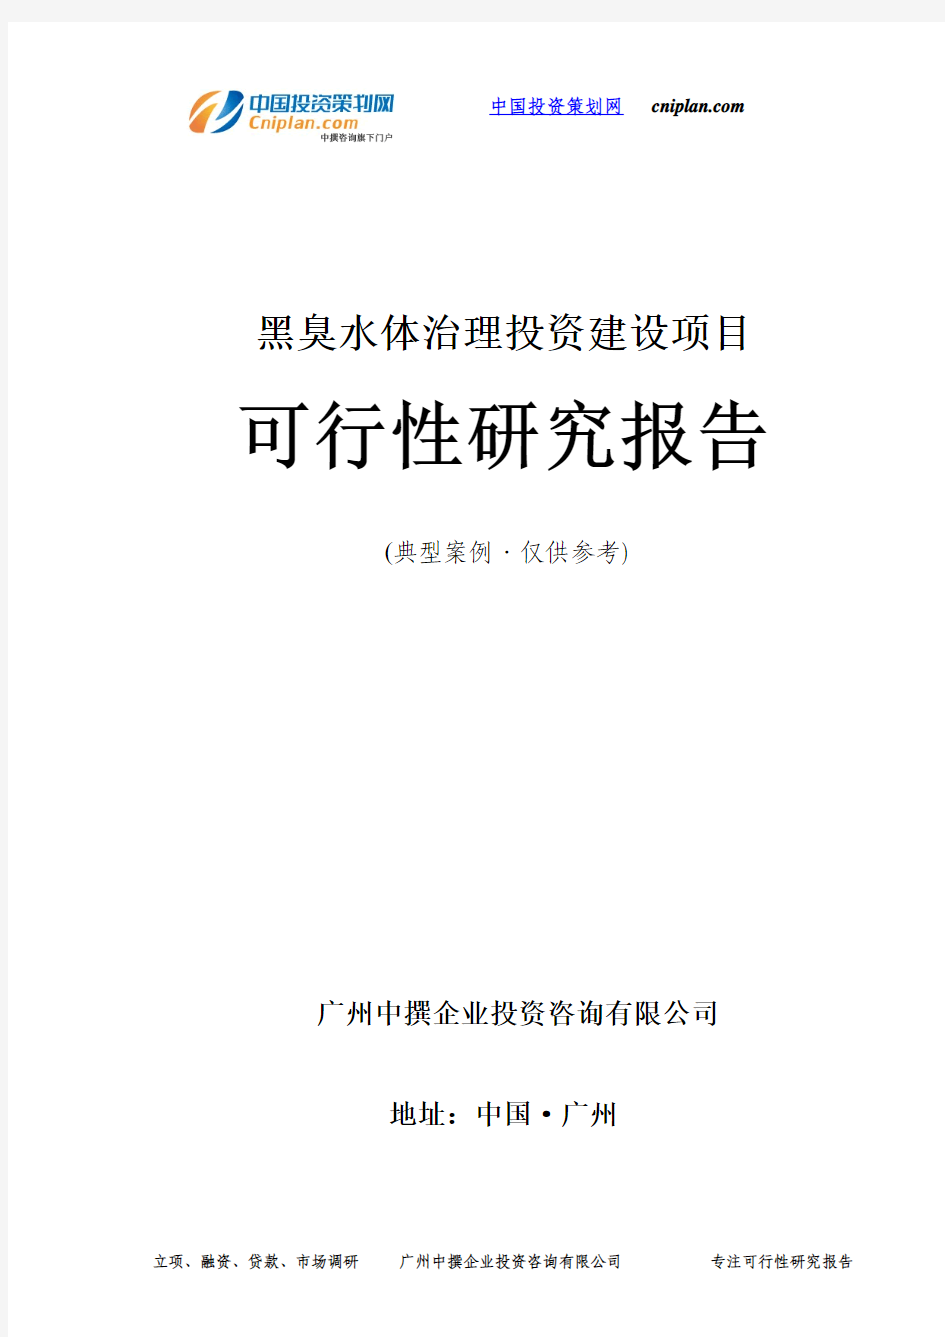 黑臭水体治理投资建设项目可行性研究报告-广州中撰咨询